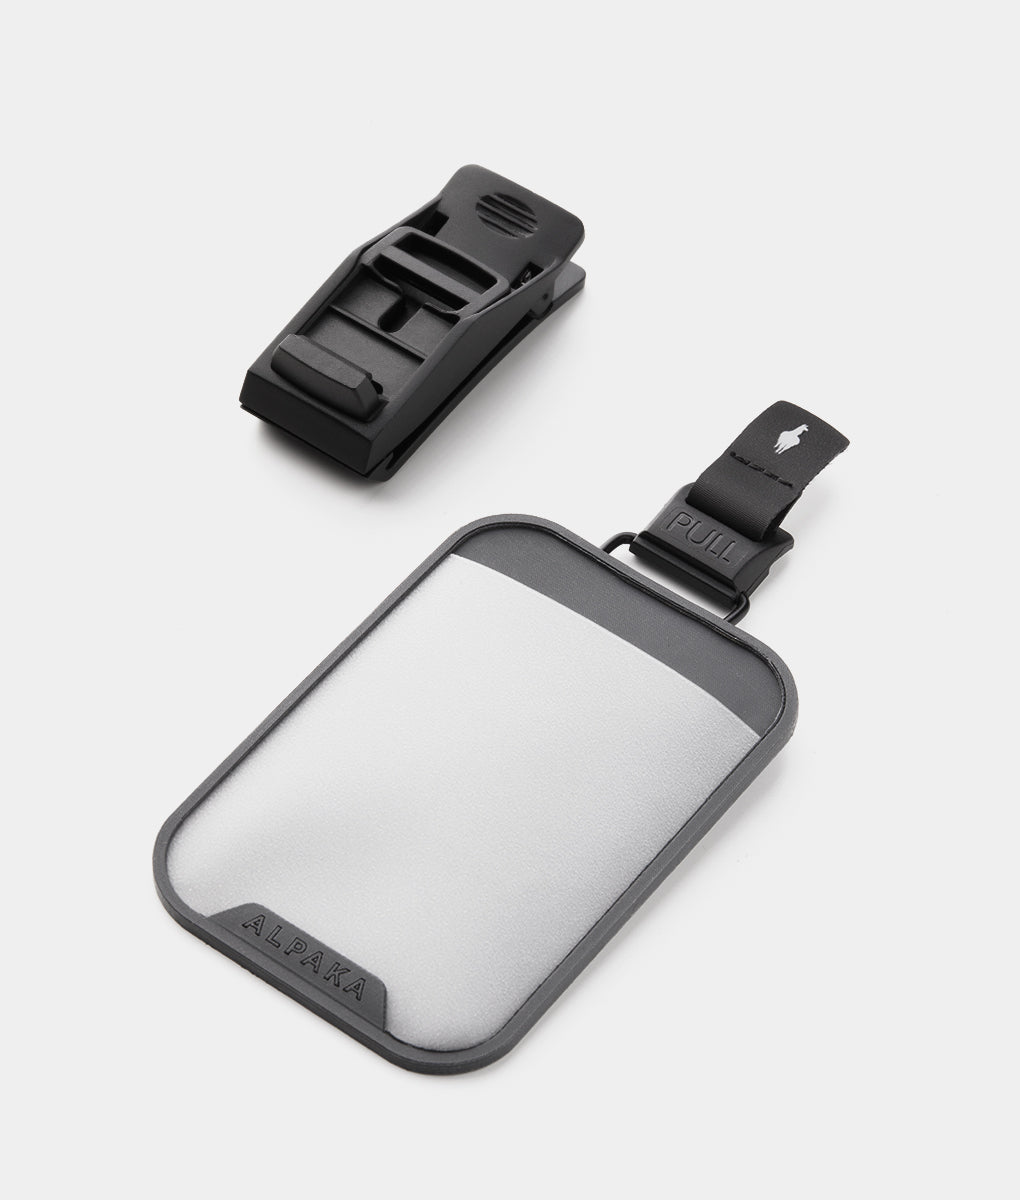 HUB USB Lanyard Kit